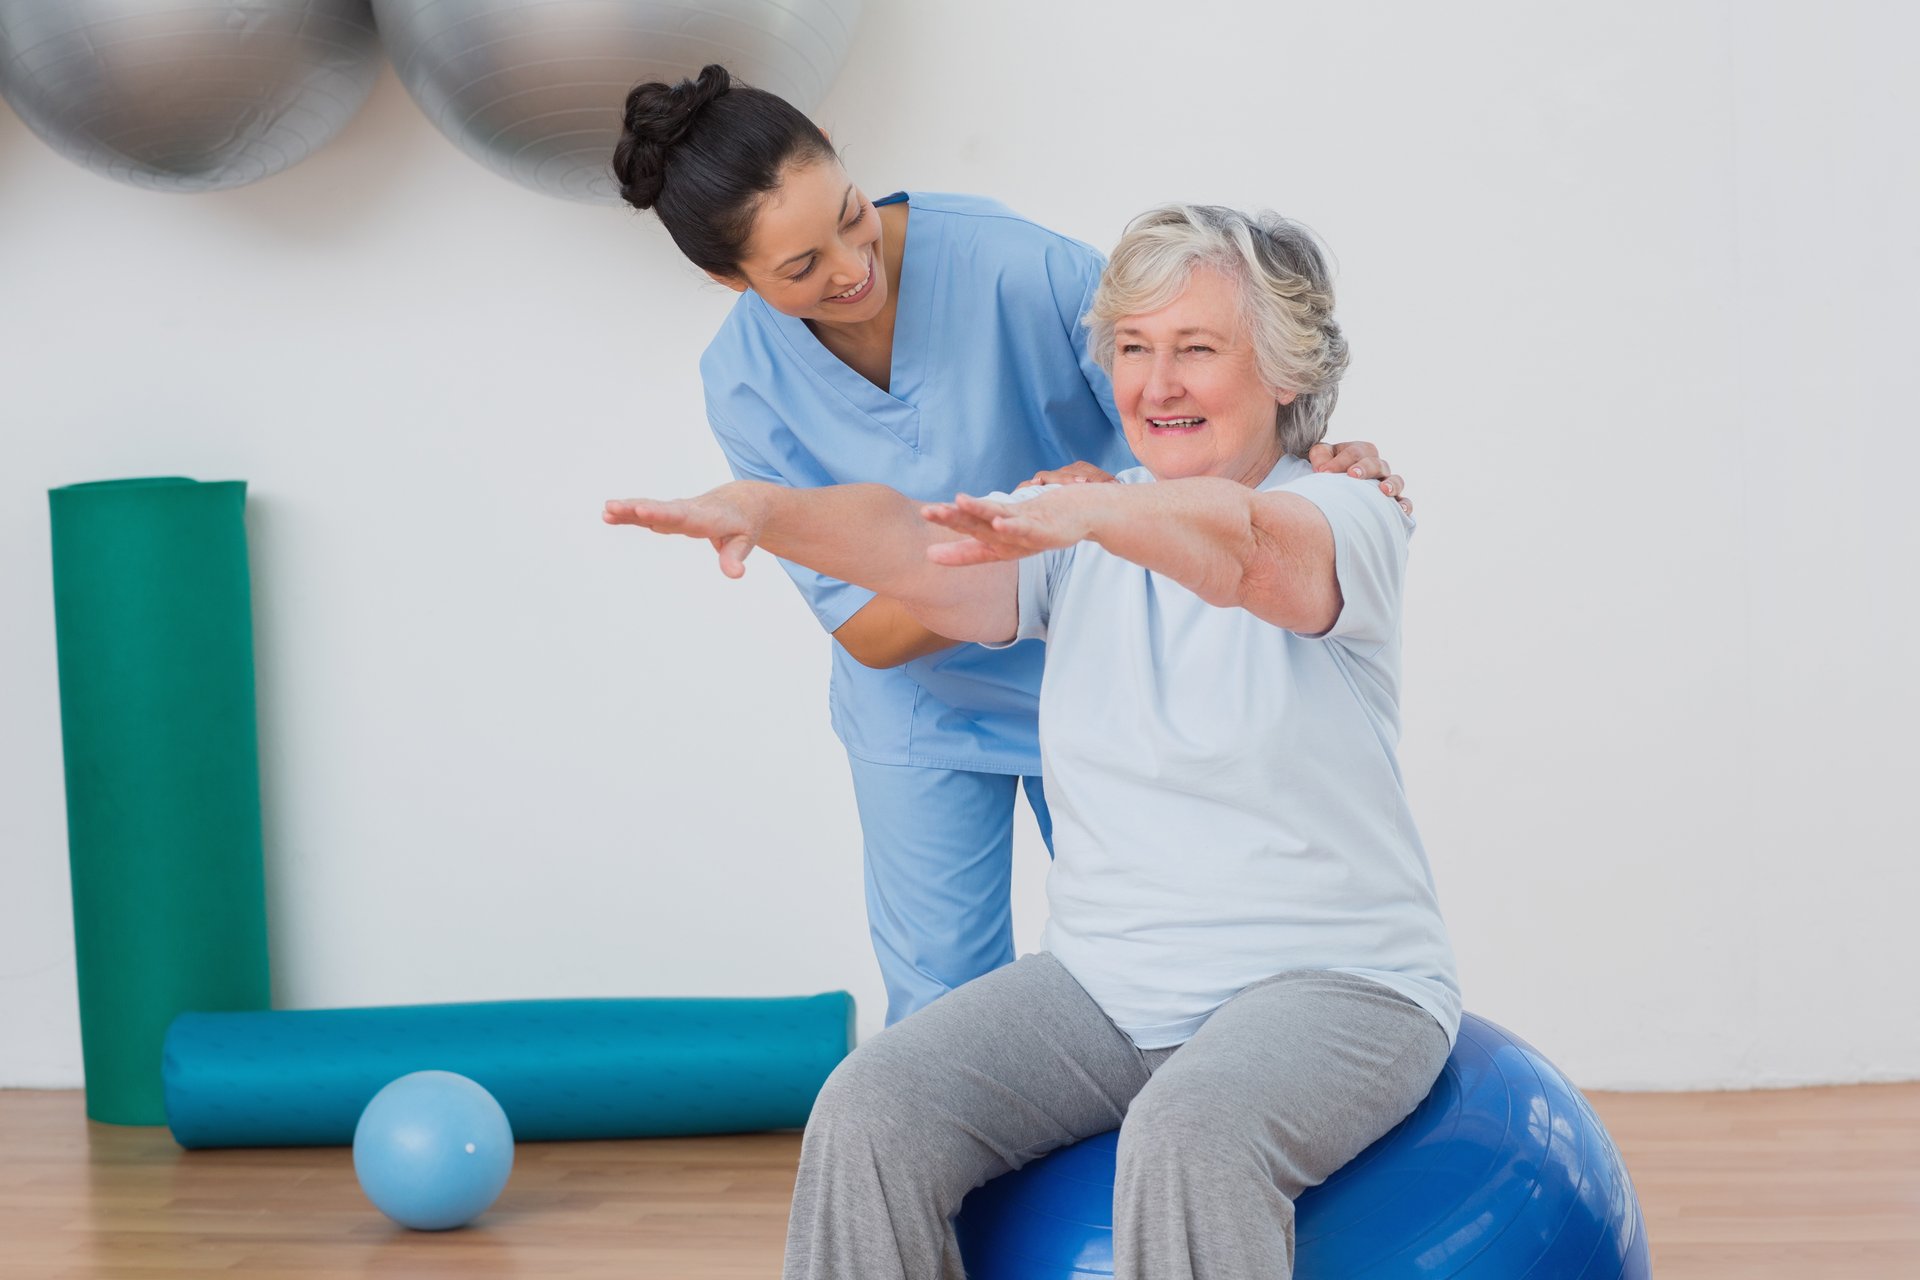 Eine Pflegerin instruiert eine ältere Frau, die auf im Sport-Outfit auf einem blauen Gymnastikball sitzt. Die beiden Frauen befinden sich in einer Sporthalle.